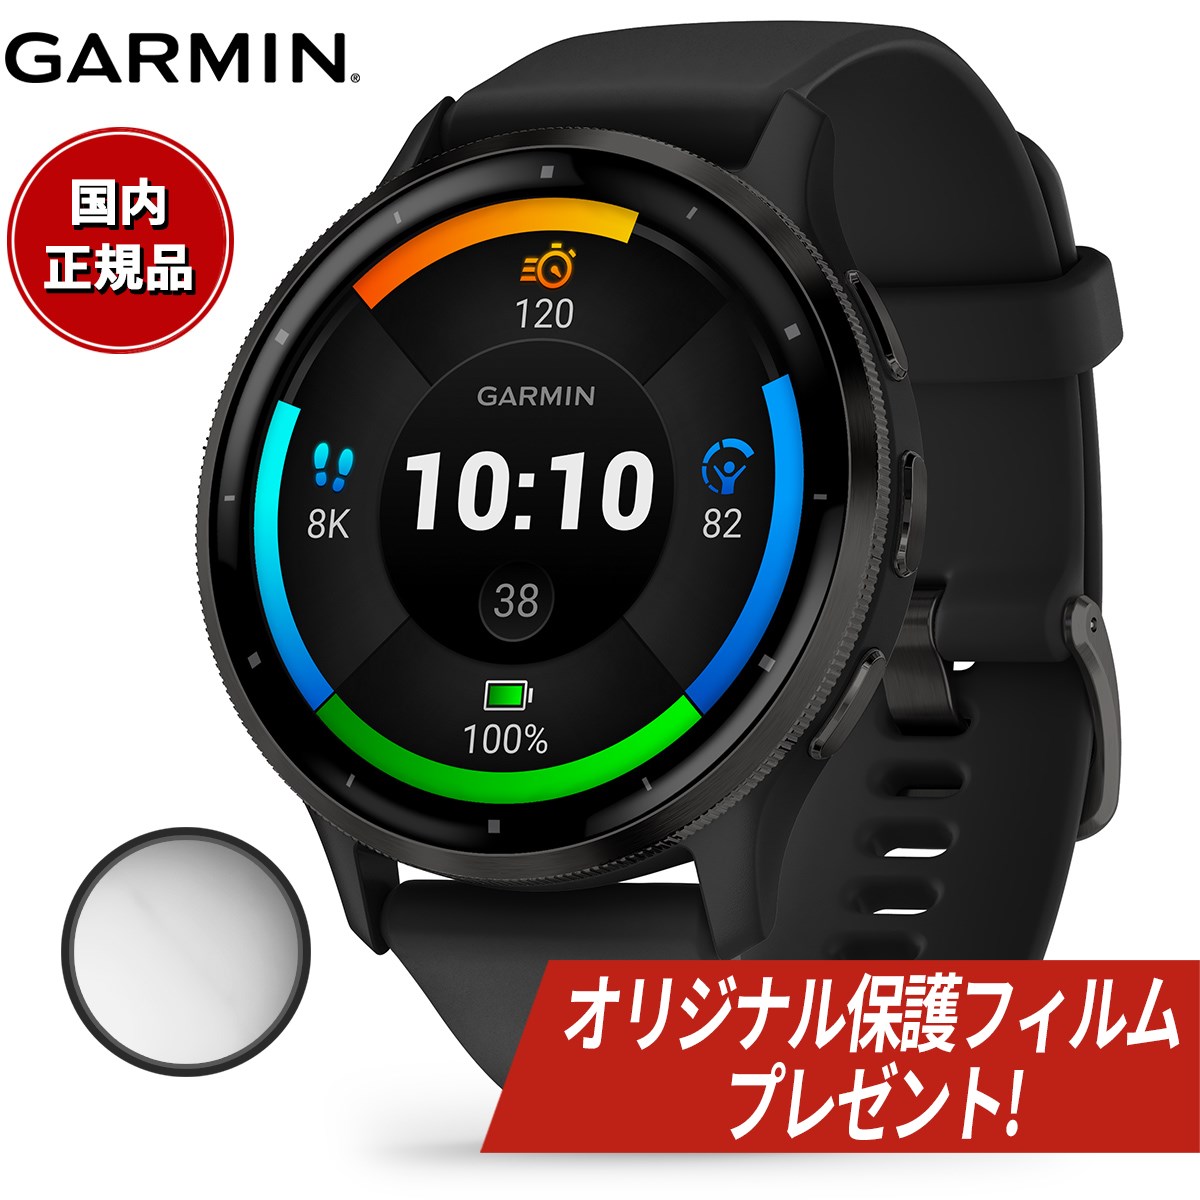 【オリジナル保護フィルム付き】ガーミン GARMIN Venu 3 ヴェニュー 3 GPS スマートウォッチ ライフログ フィットネス 腕時計 メンズ レディース 010-02784-41 Black/Slate